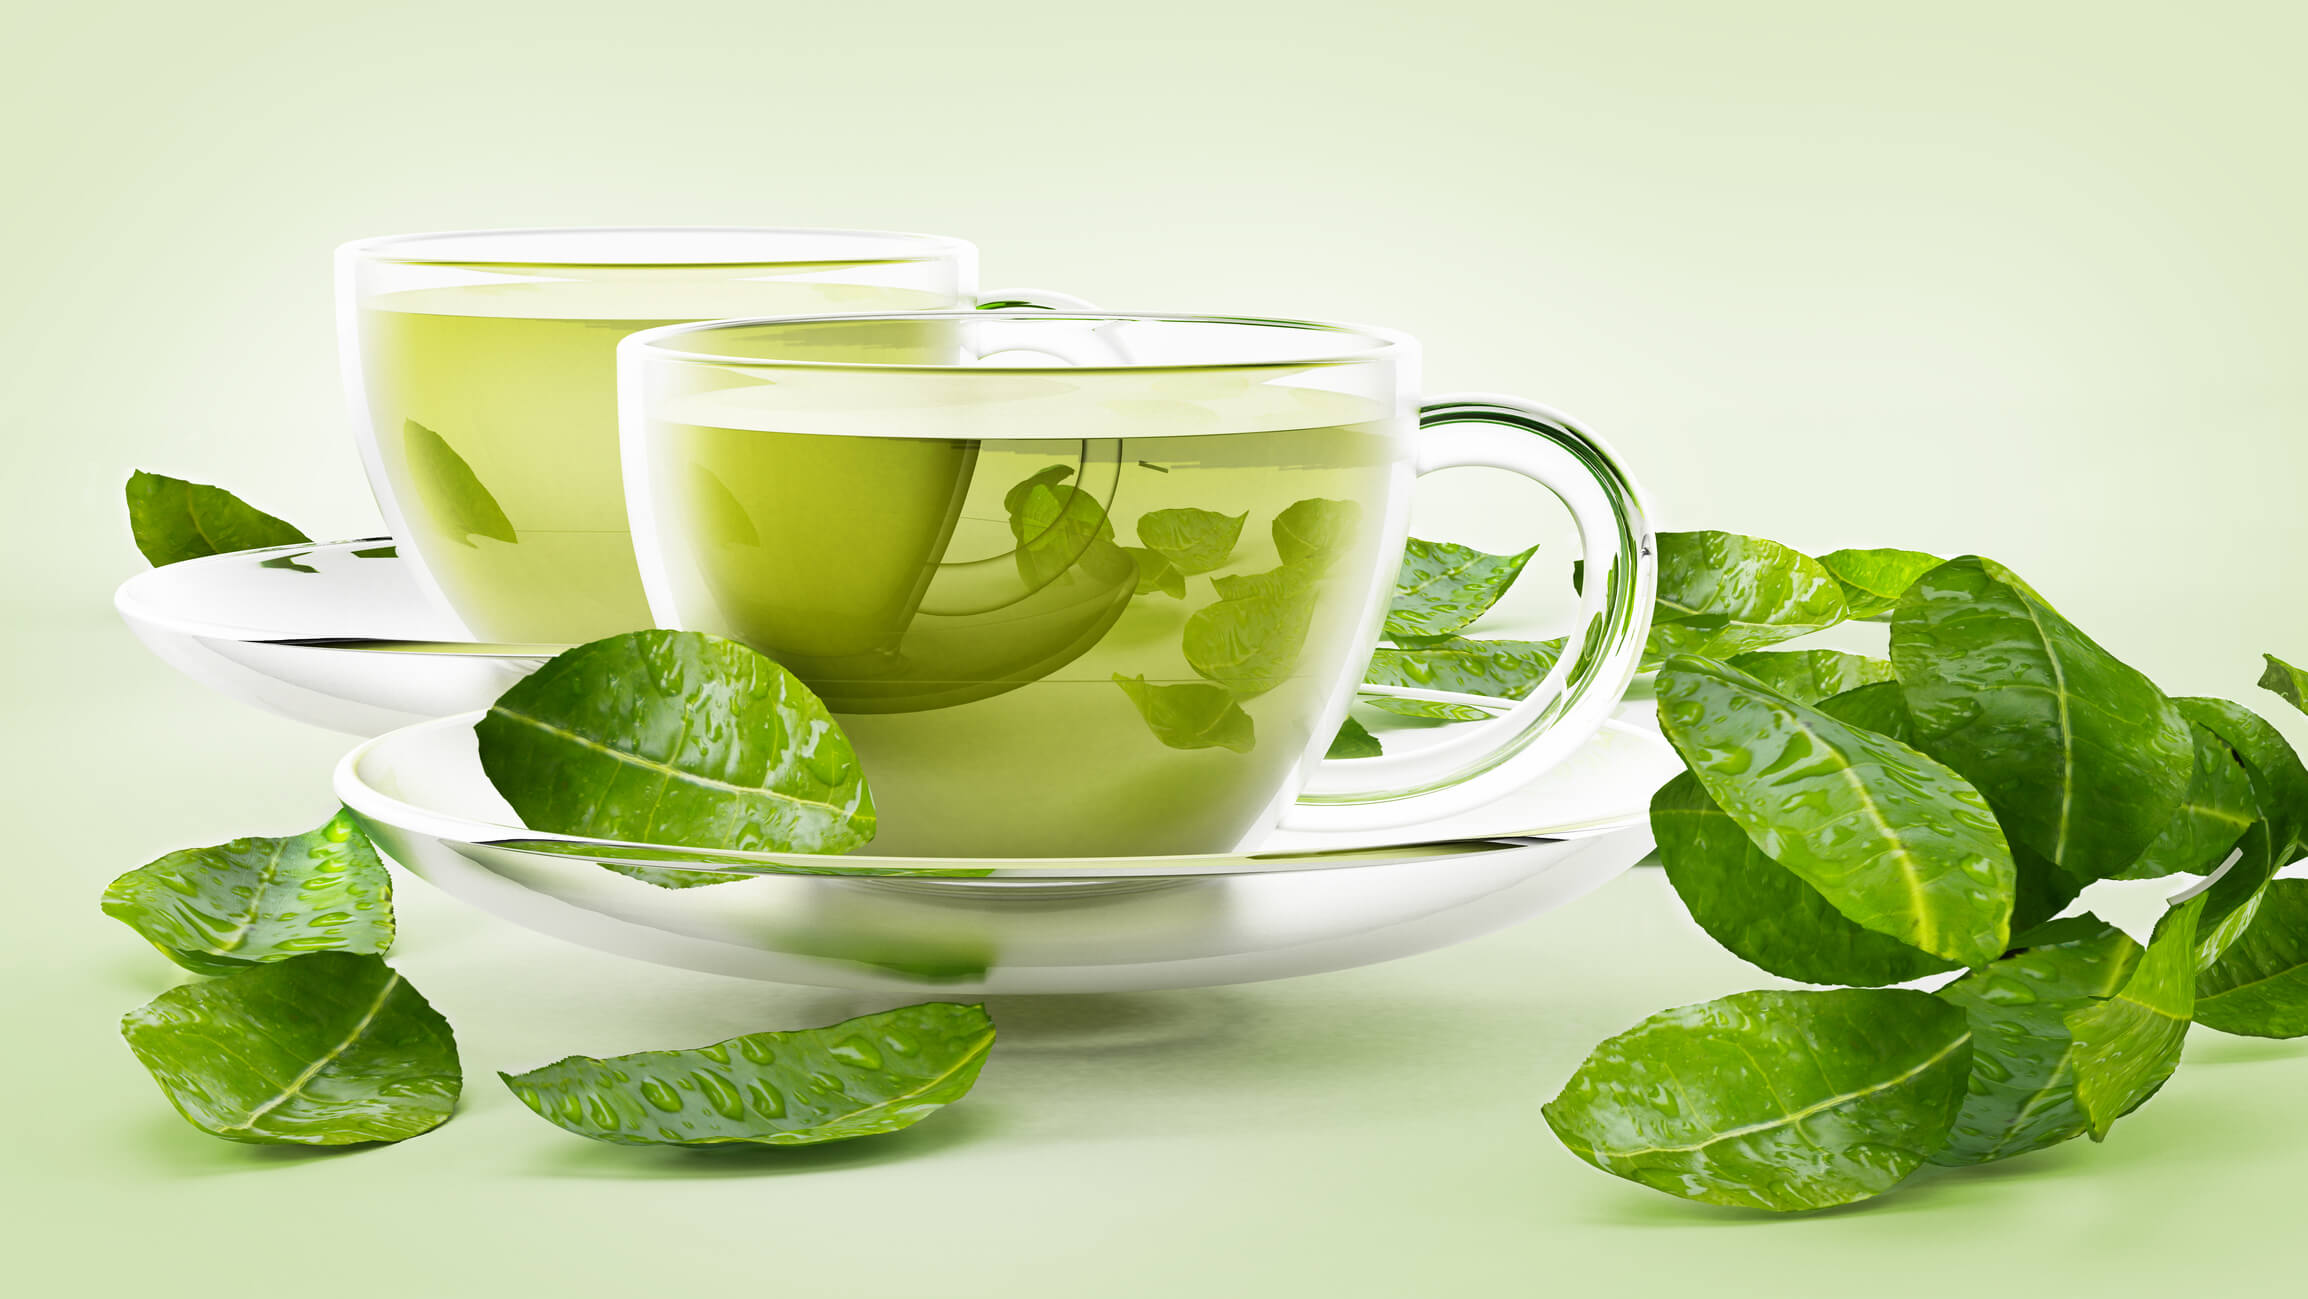 كيف تتناولي الشاي الاخضر لفقدان الوزن بدون أي ضرر؟ 